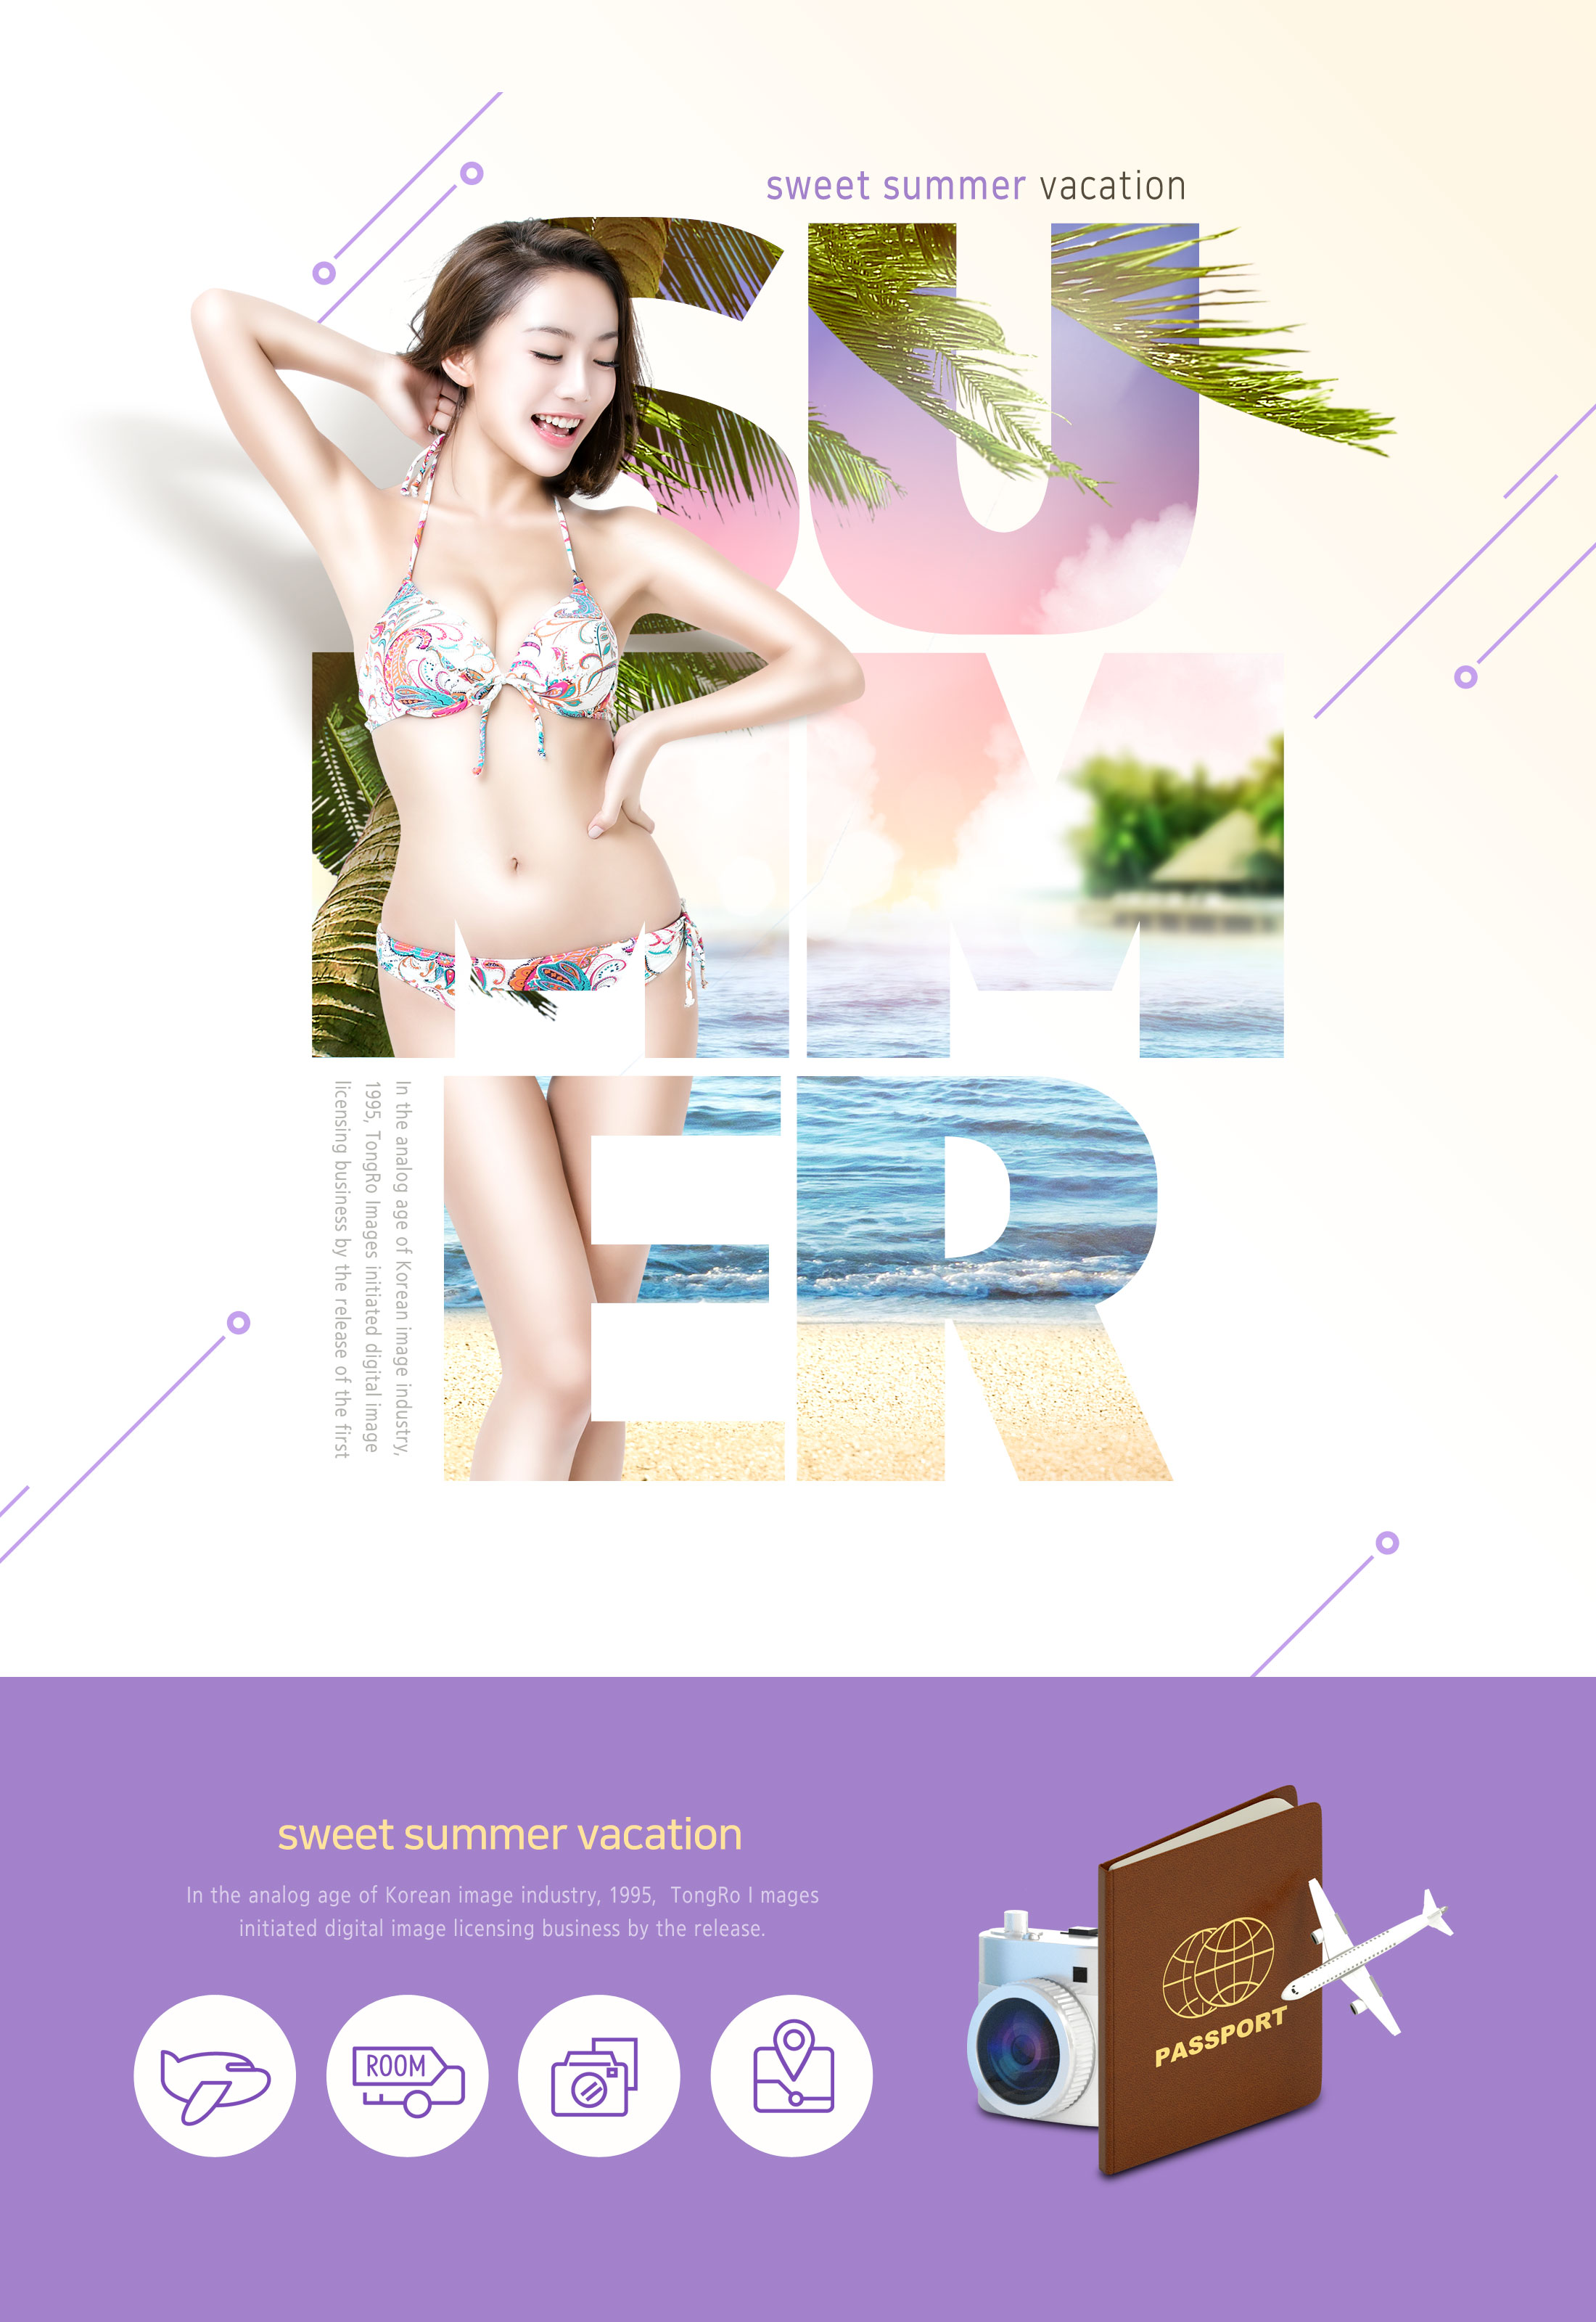 夏季暑假旅游比基尼广告宣传海报设计模板插图